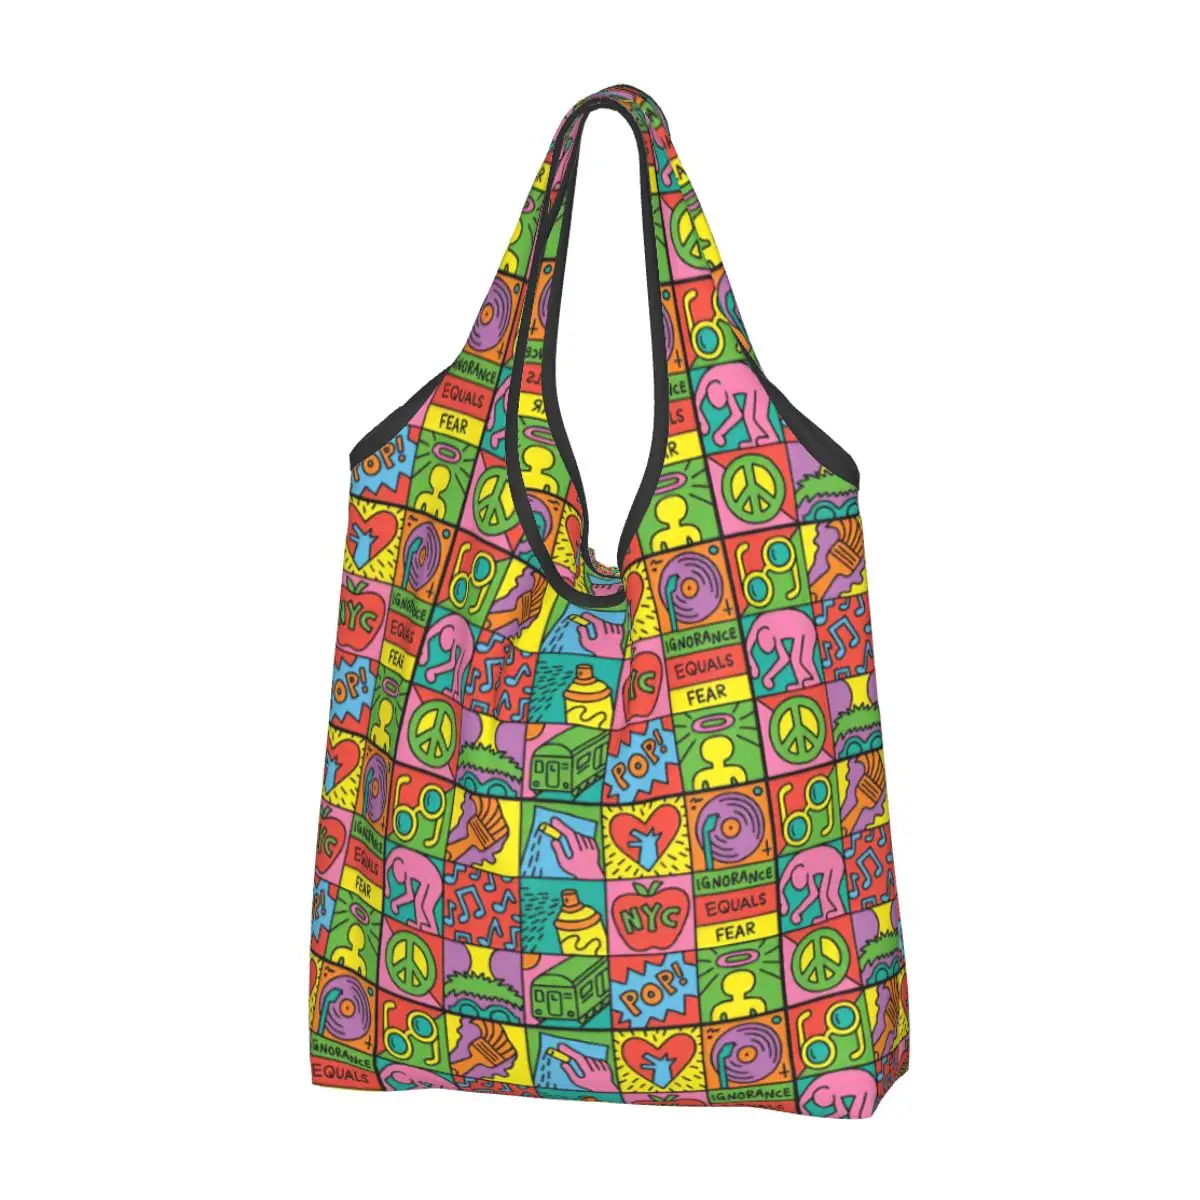 Многократна употреба за хранителни стоки чанти с графити в стил поп-арт, сгъваеми, които могат да се перат в машина, пазарска чанта Harings, голяма дългогодишна чанта за съхранение, лесна